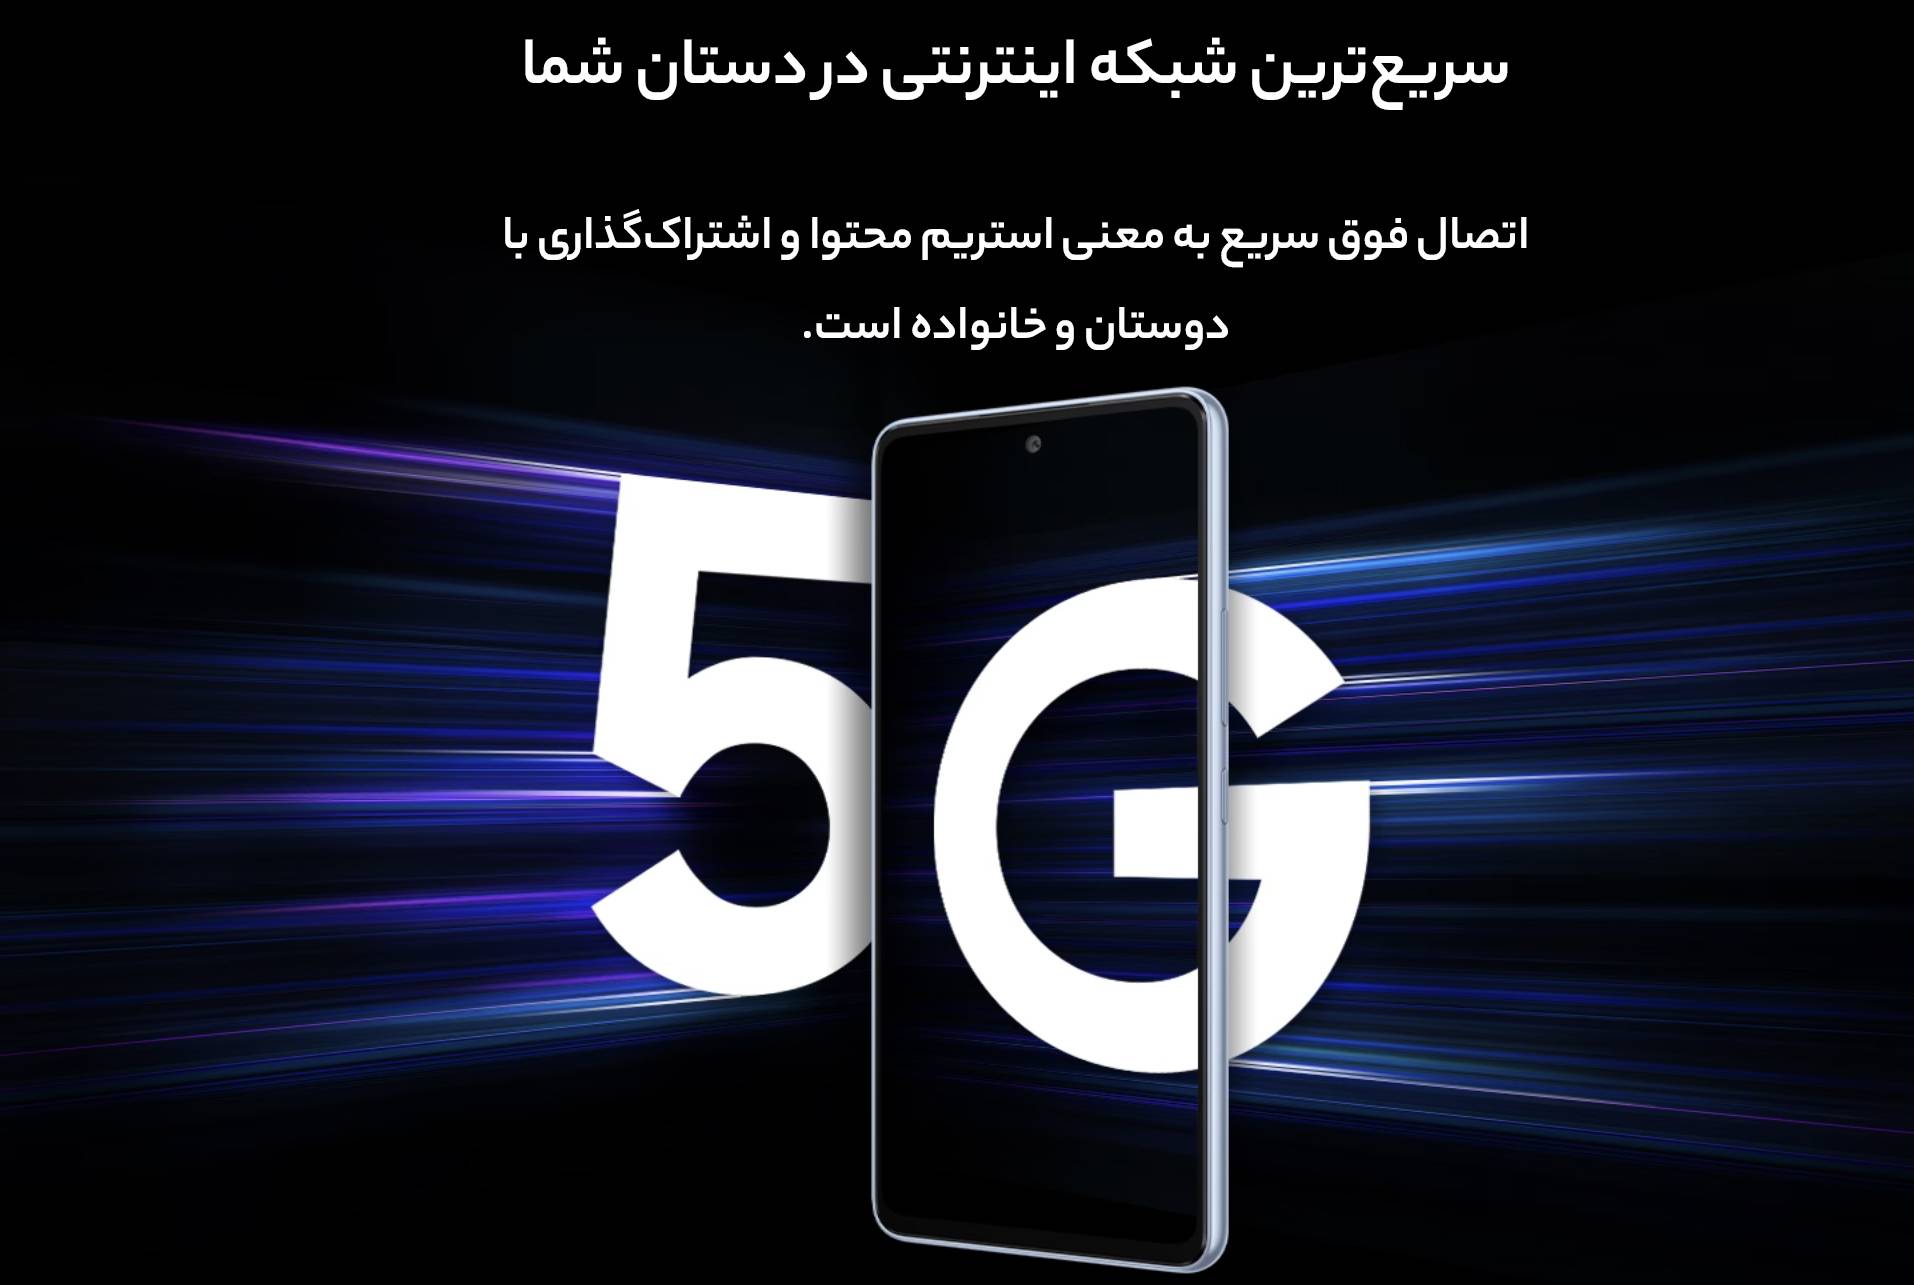 گوشی موبایل سامسونگ مدل Galaxy A53 ظرفیت 128 گیگابایت رم 8 گیگابایت | 5G